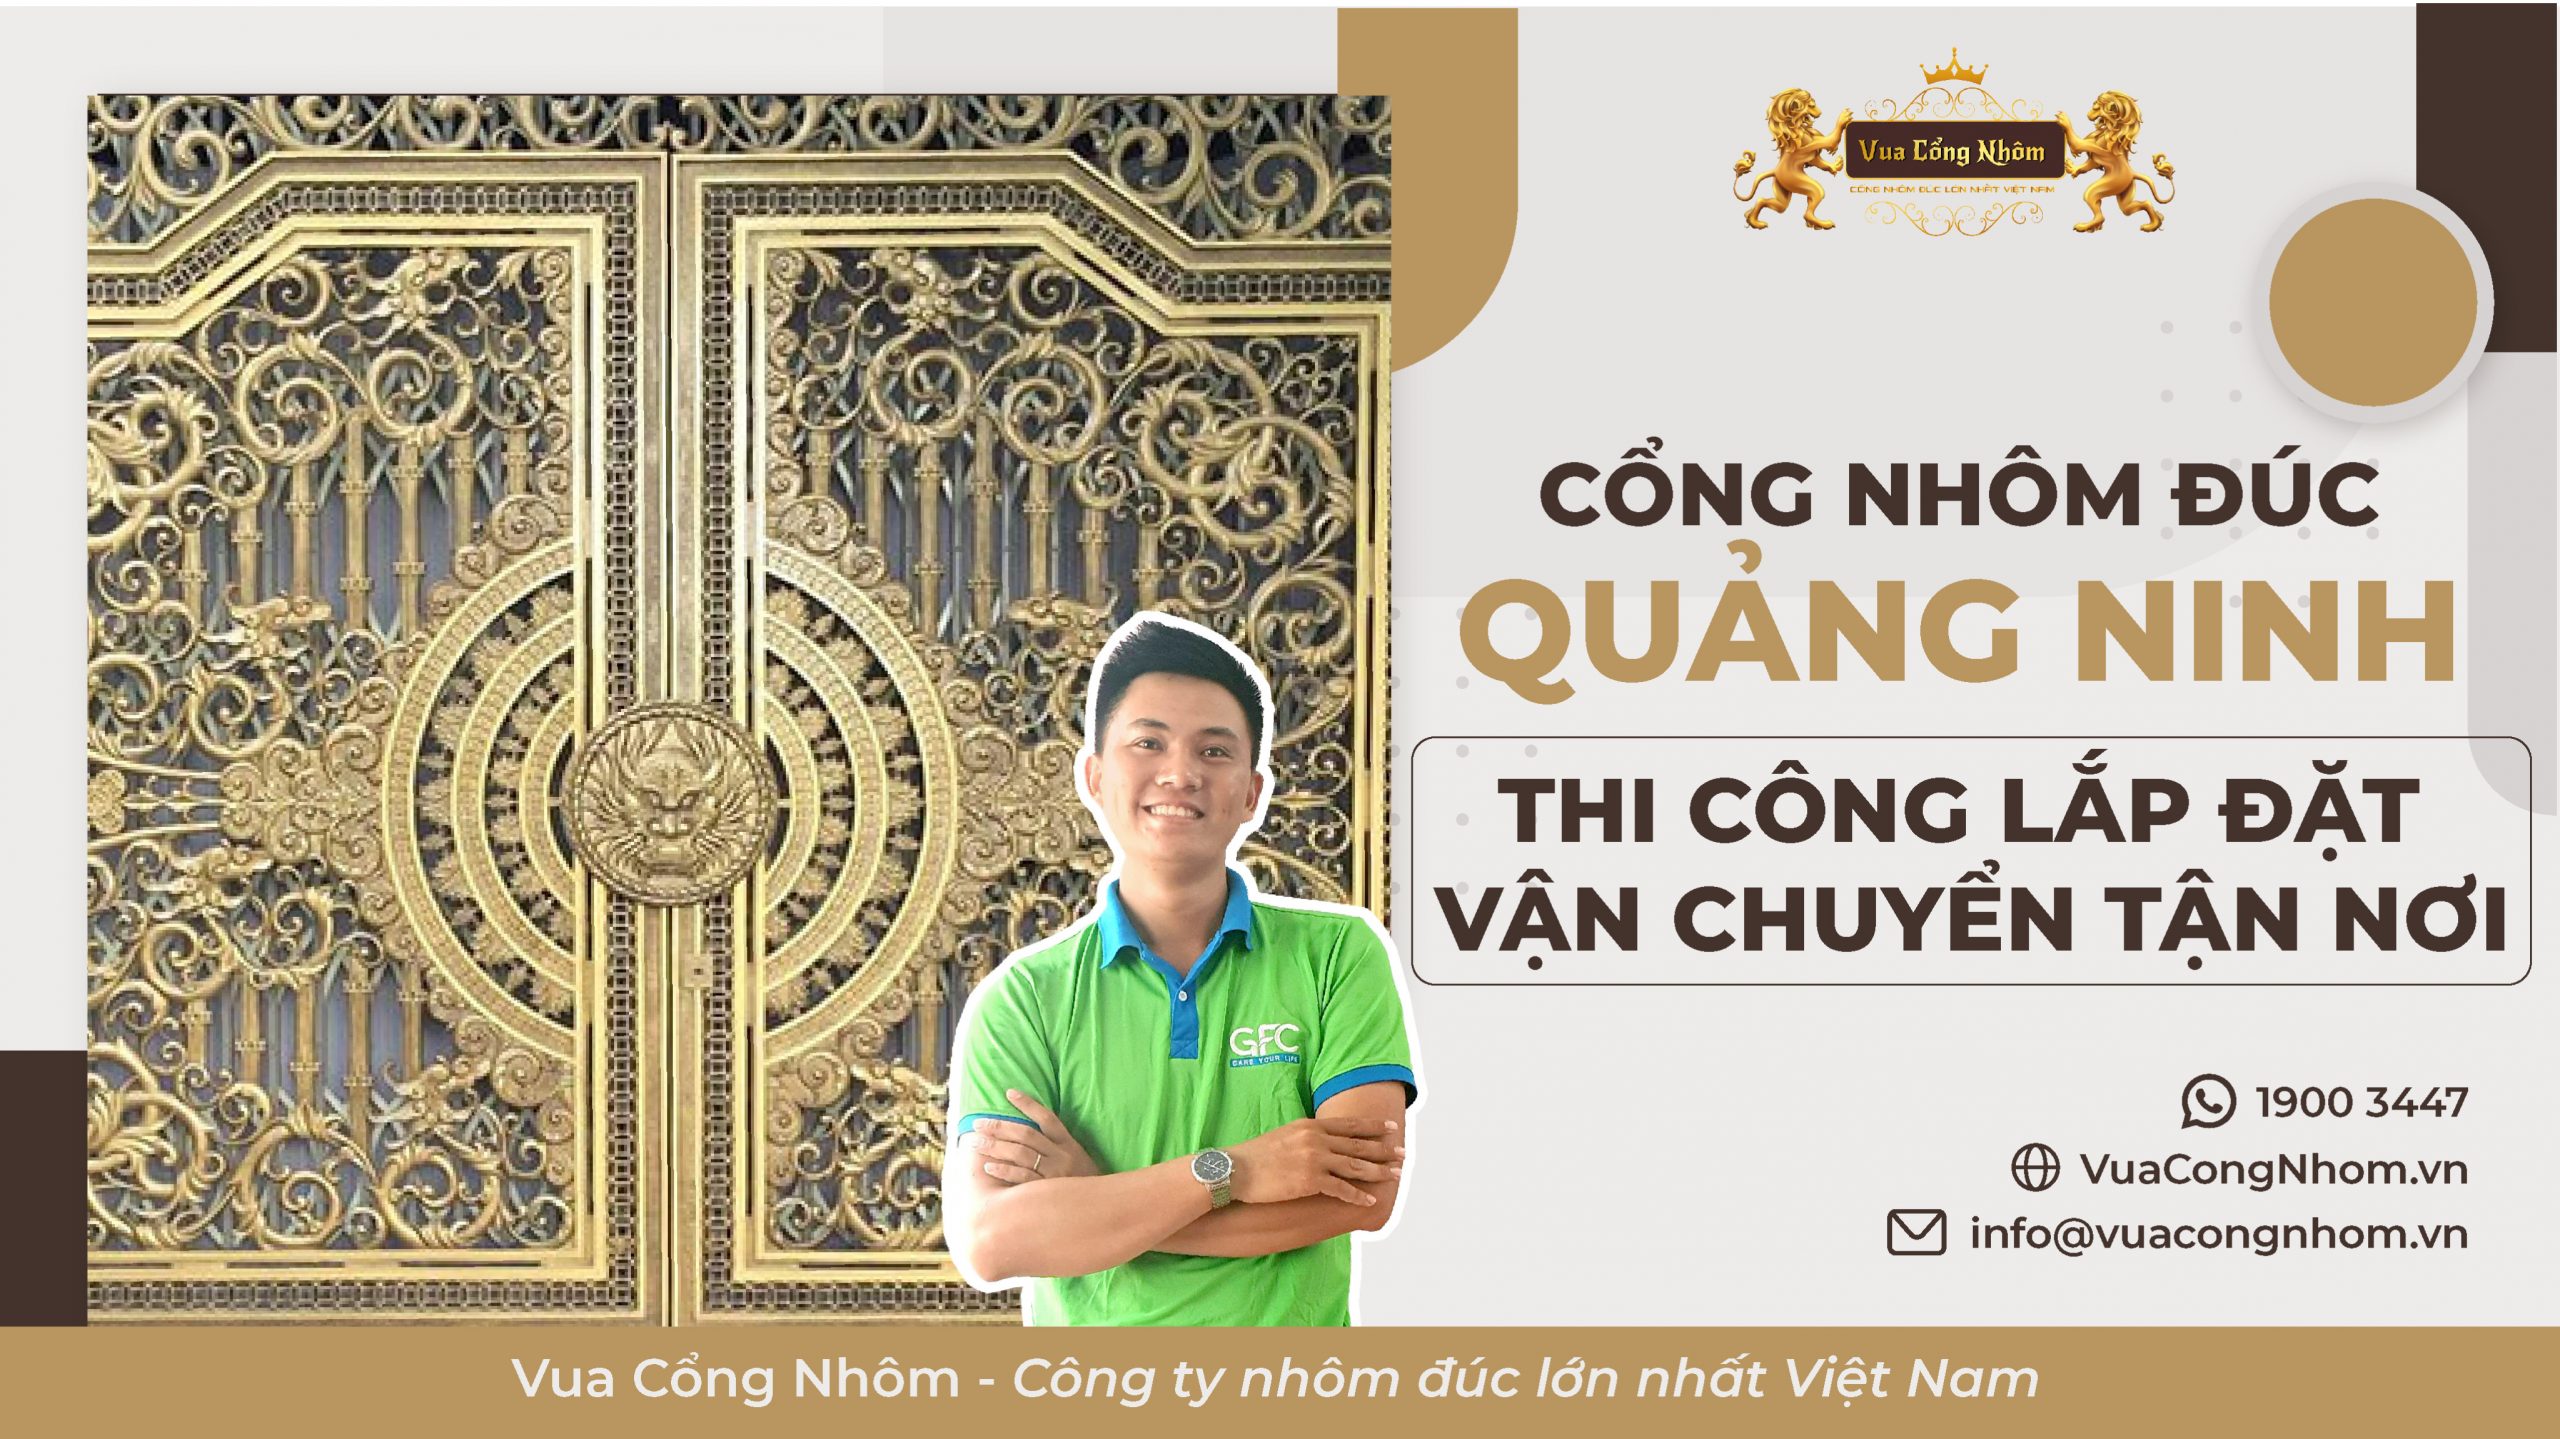 Báo giá cổng nhôm đúc Quảng Ninh bền đẹp, chất lượng 2022